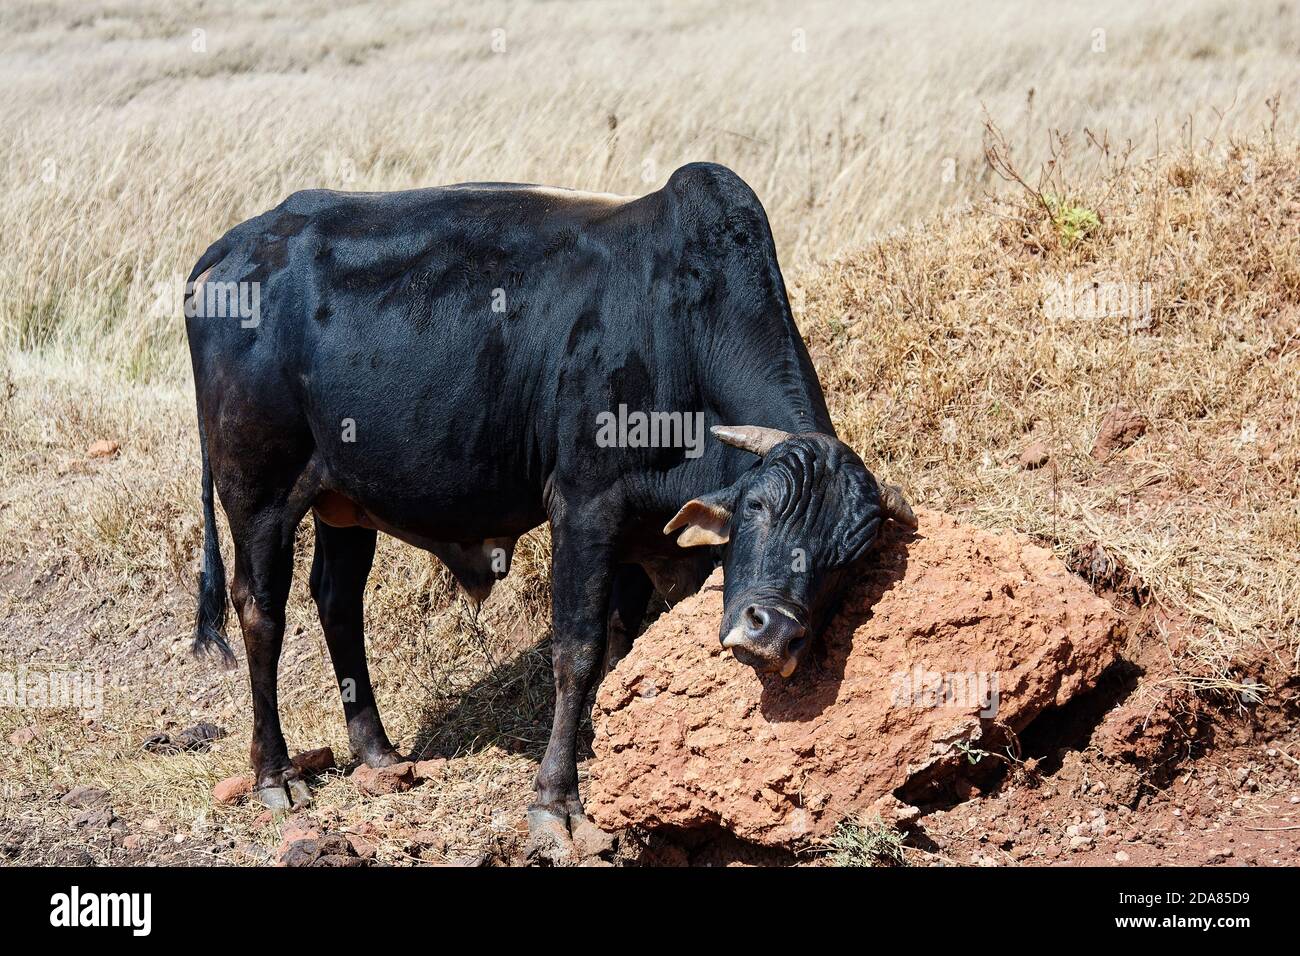 Schwarze Kuh reiben Gesicht auf harten roten Schmutz, Haustier, glänzendes Fell, Natur, Tansania, Afrika Stockfoto